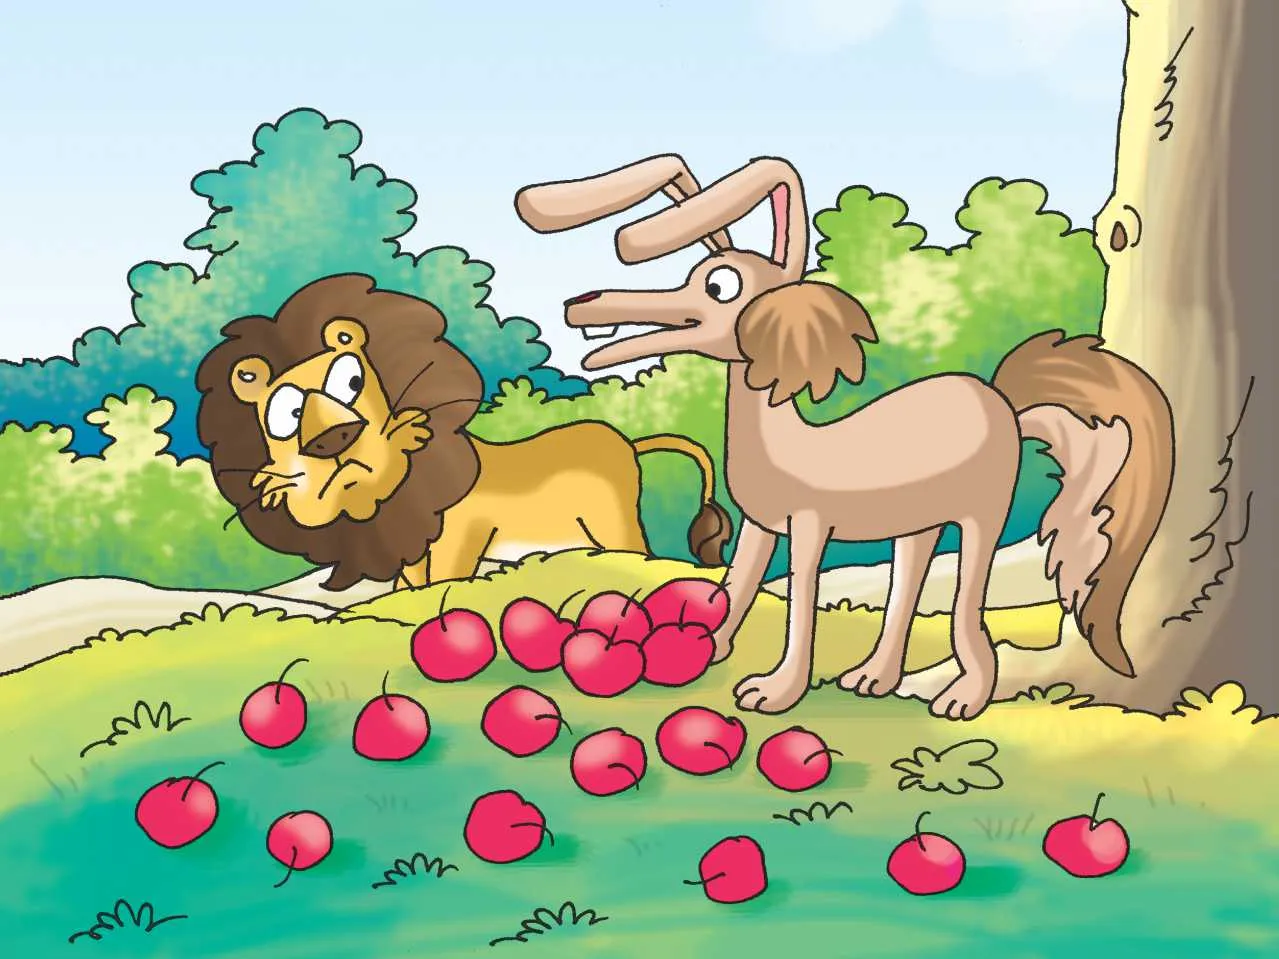 Lion and jackal cartoon image